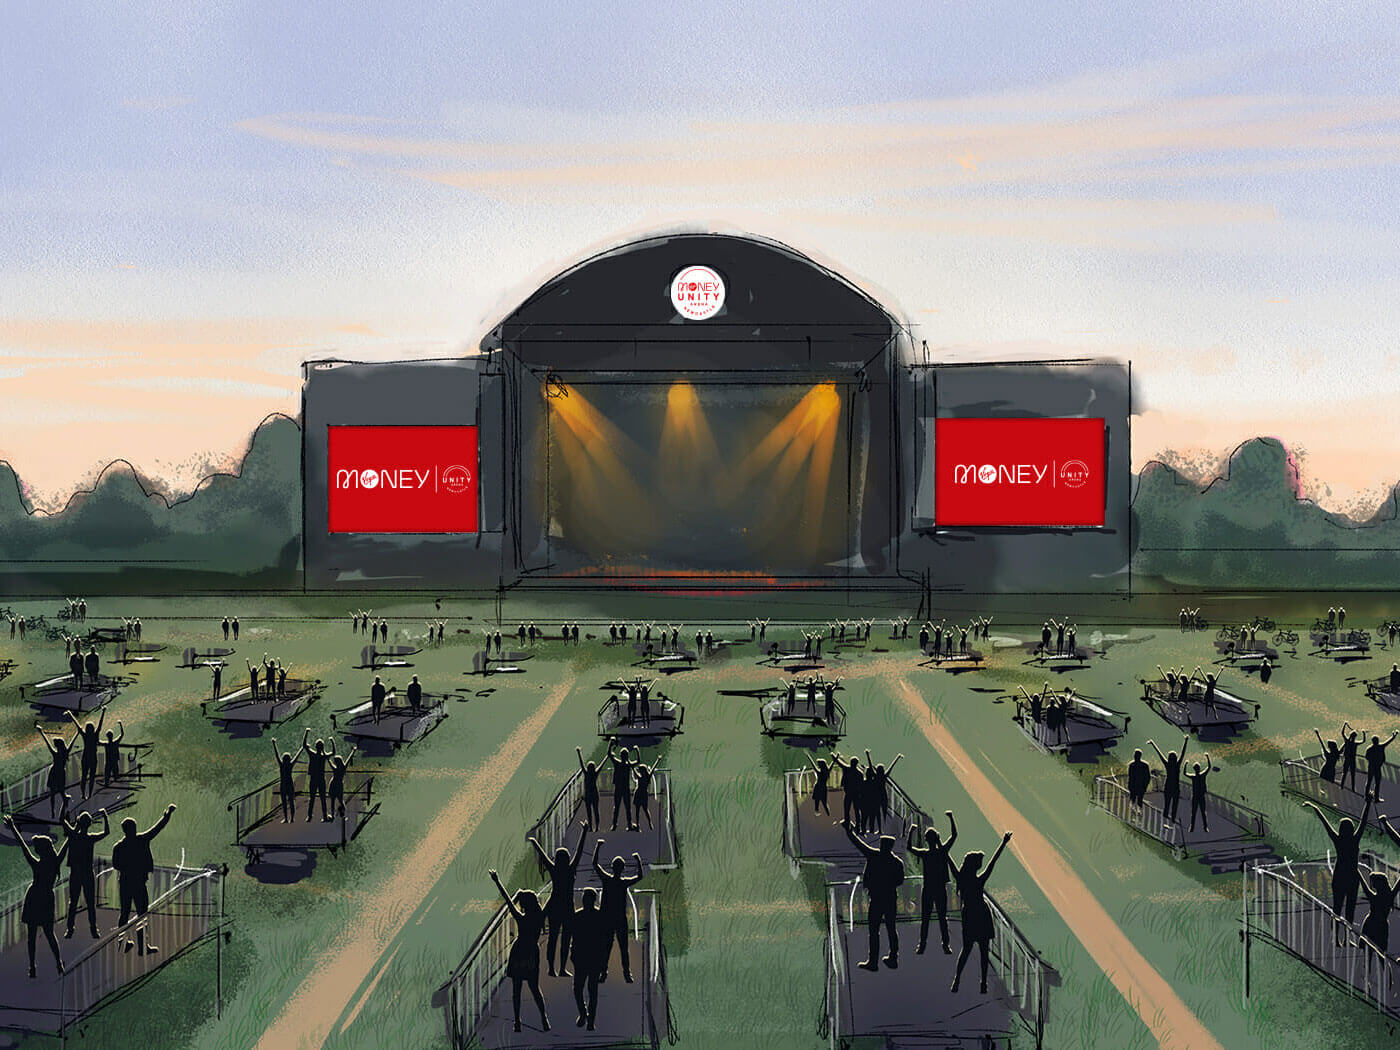 The Virgin Money Unity Arena